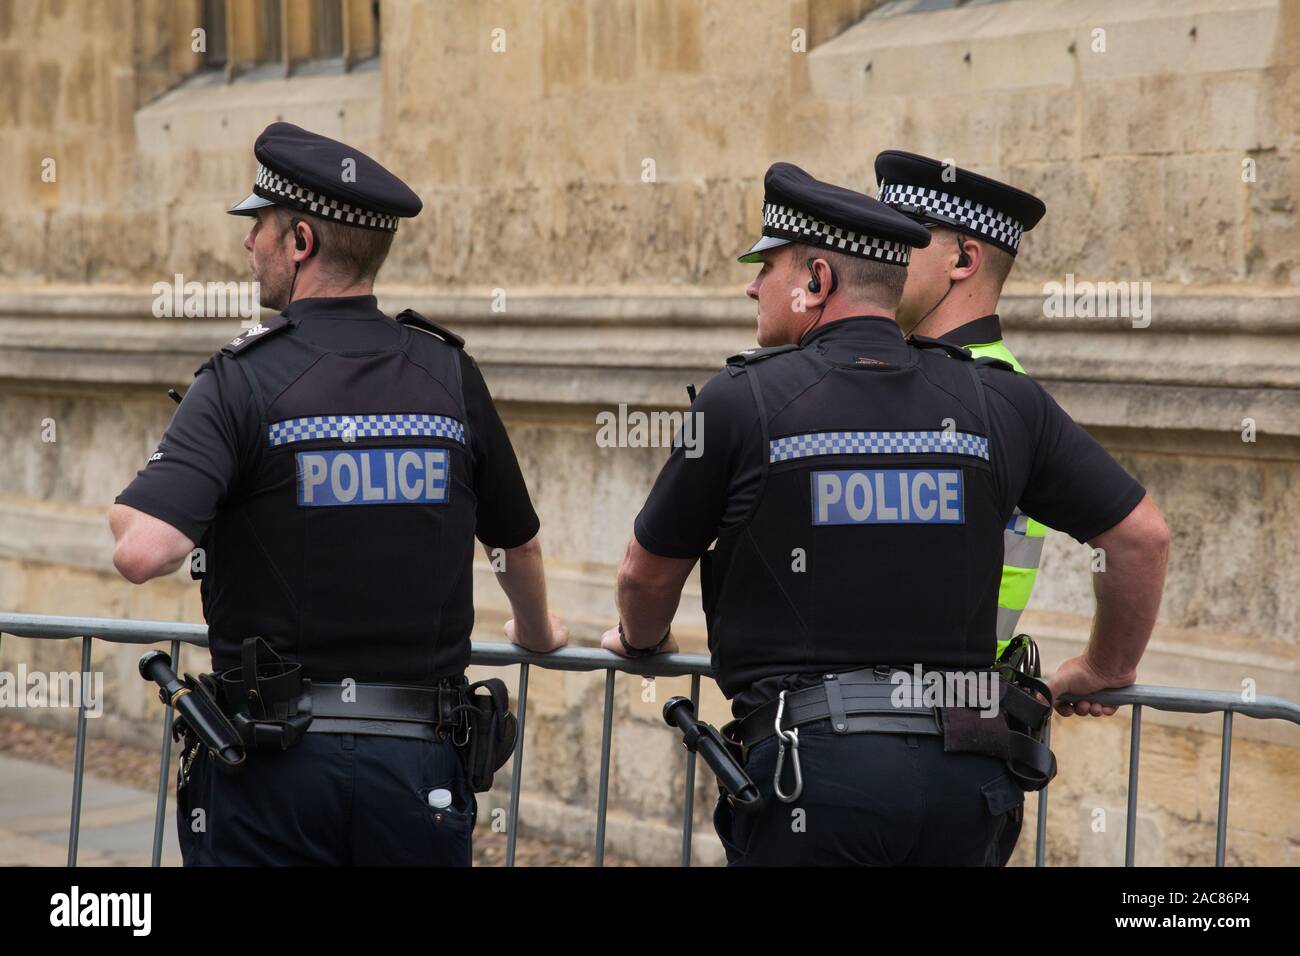 Drei uniformierte Polizisten in kurzen Ärmeln tragen Kappen mit Headsets und tragen utility Gürtel mit Gummiknüppeln überwachen eine Demonstration Stockfoto